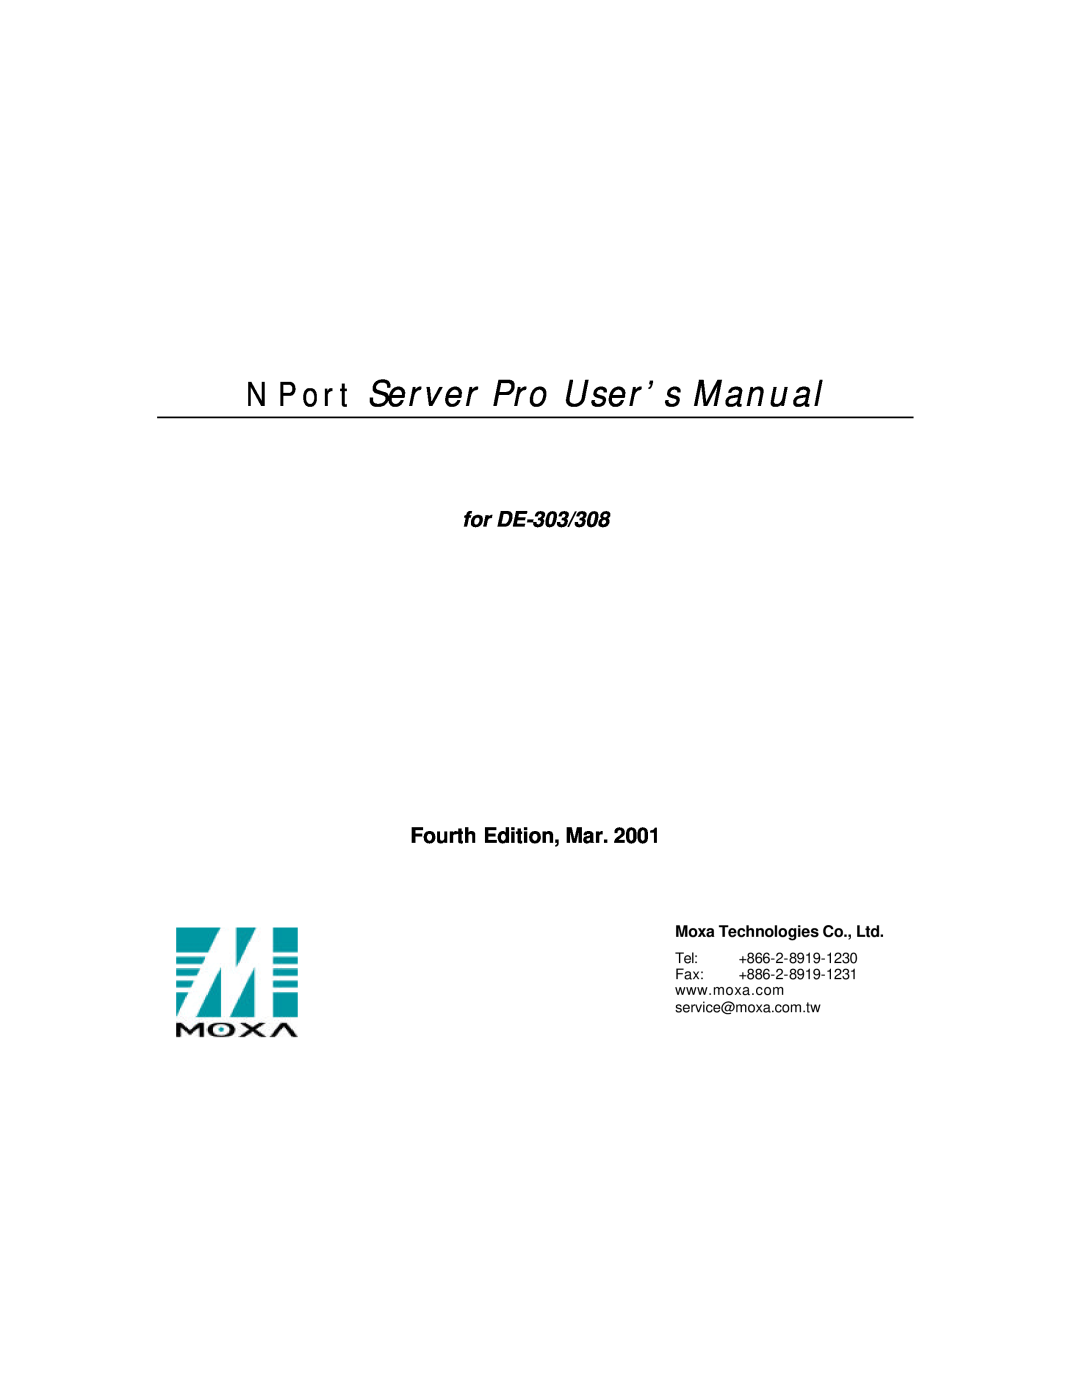 Moxa Technologies DE-308 manual N P o r t S e r v e r P r o U s e r ’ s M a n u a l, Fourth Edition, Mar, for DE-303/308 